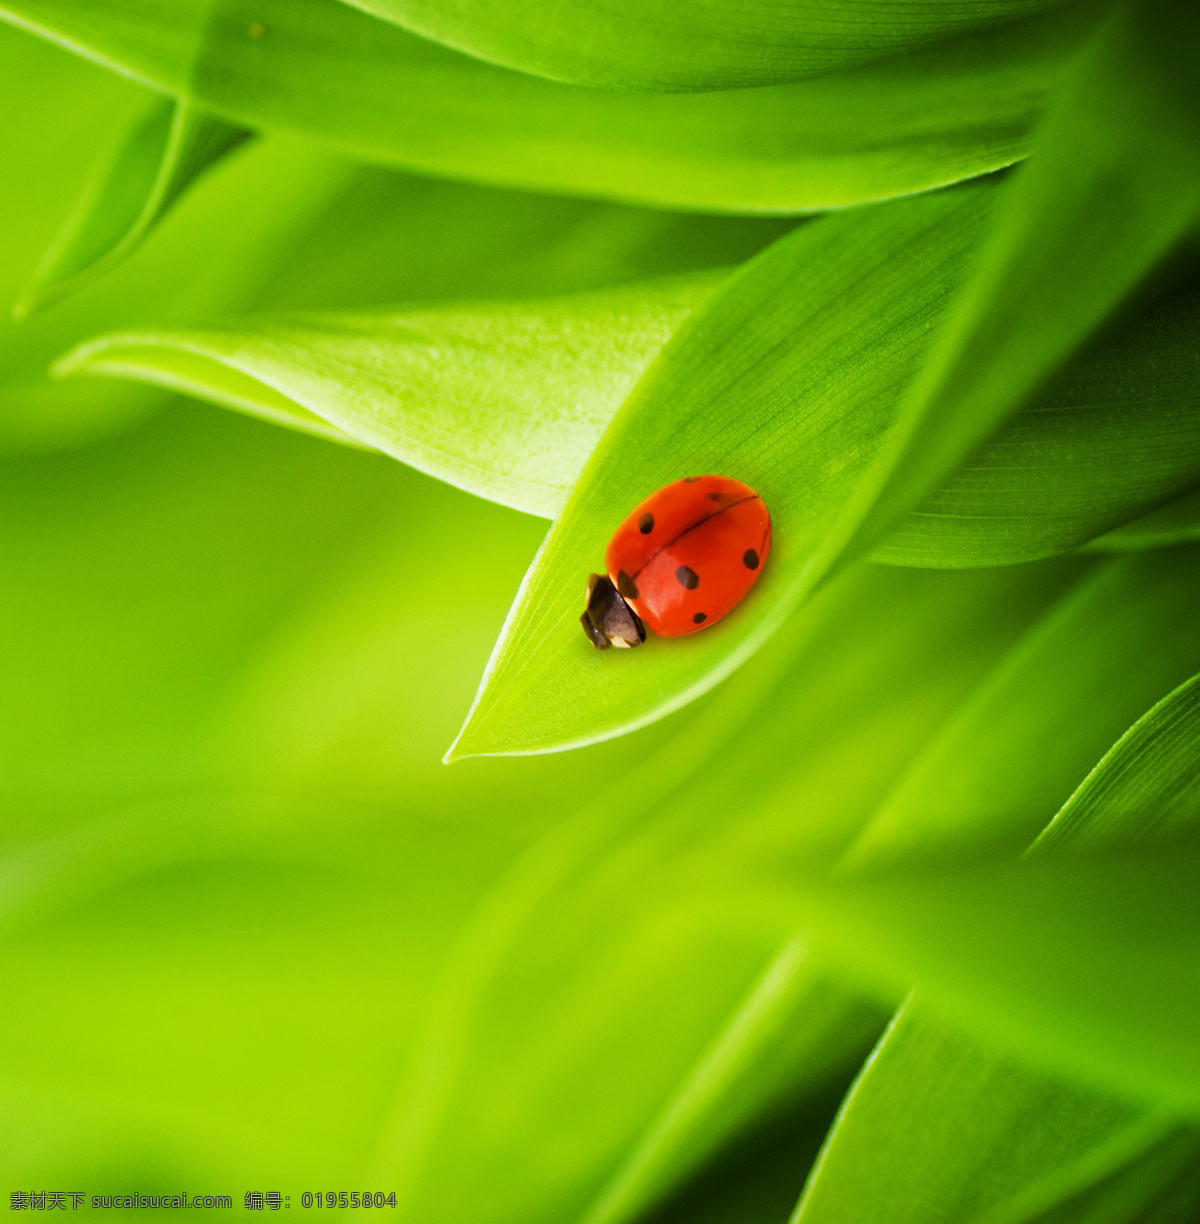 植物 瓢虫 创意图片 高清图片 昆虫 绿色 明 瓢虫虫